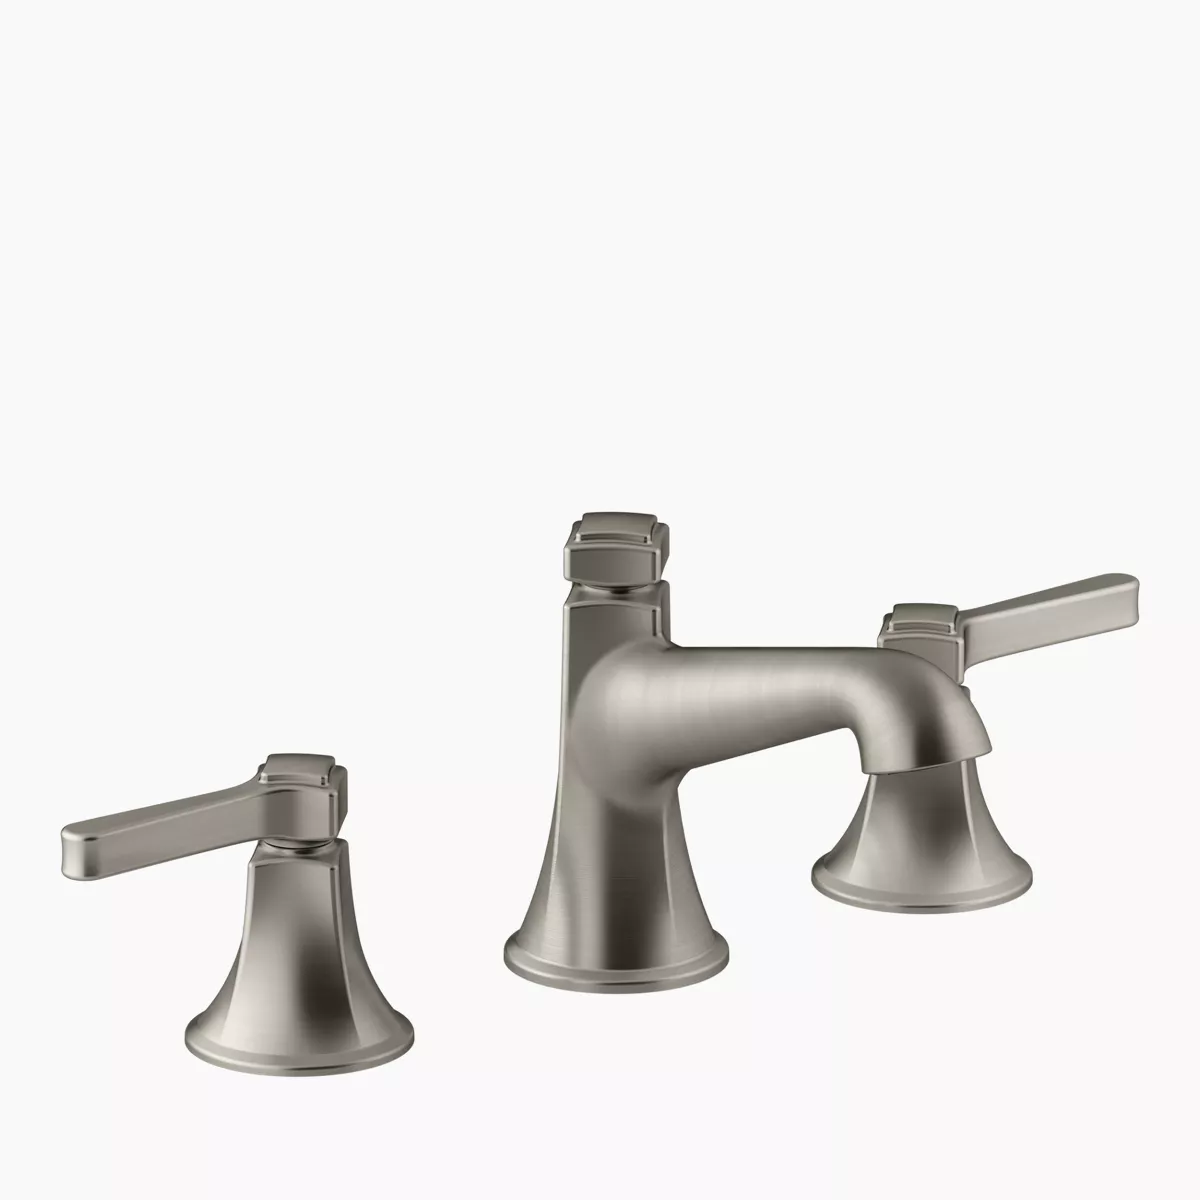 KOHLER | K-6228-C15 | Karbon Articulating Kitchen Sink Faucet with 